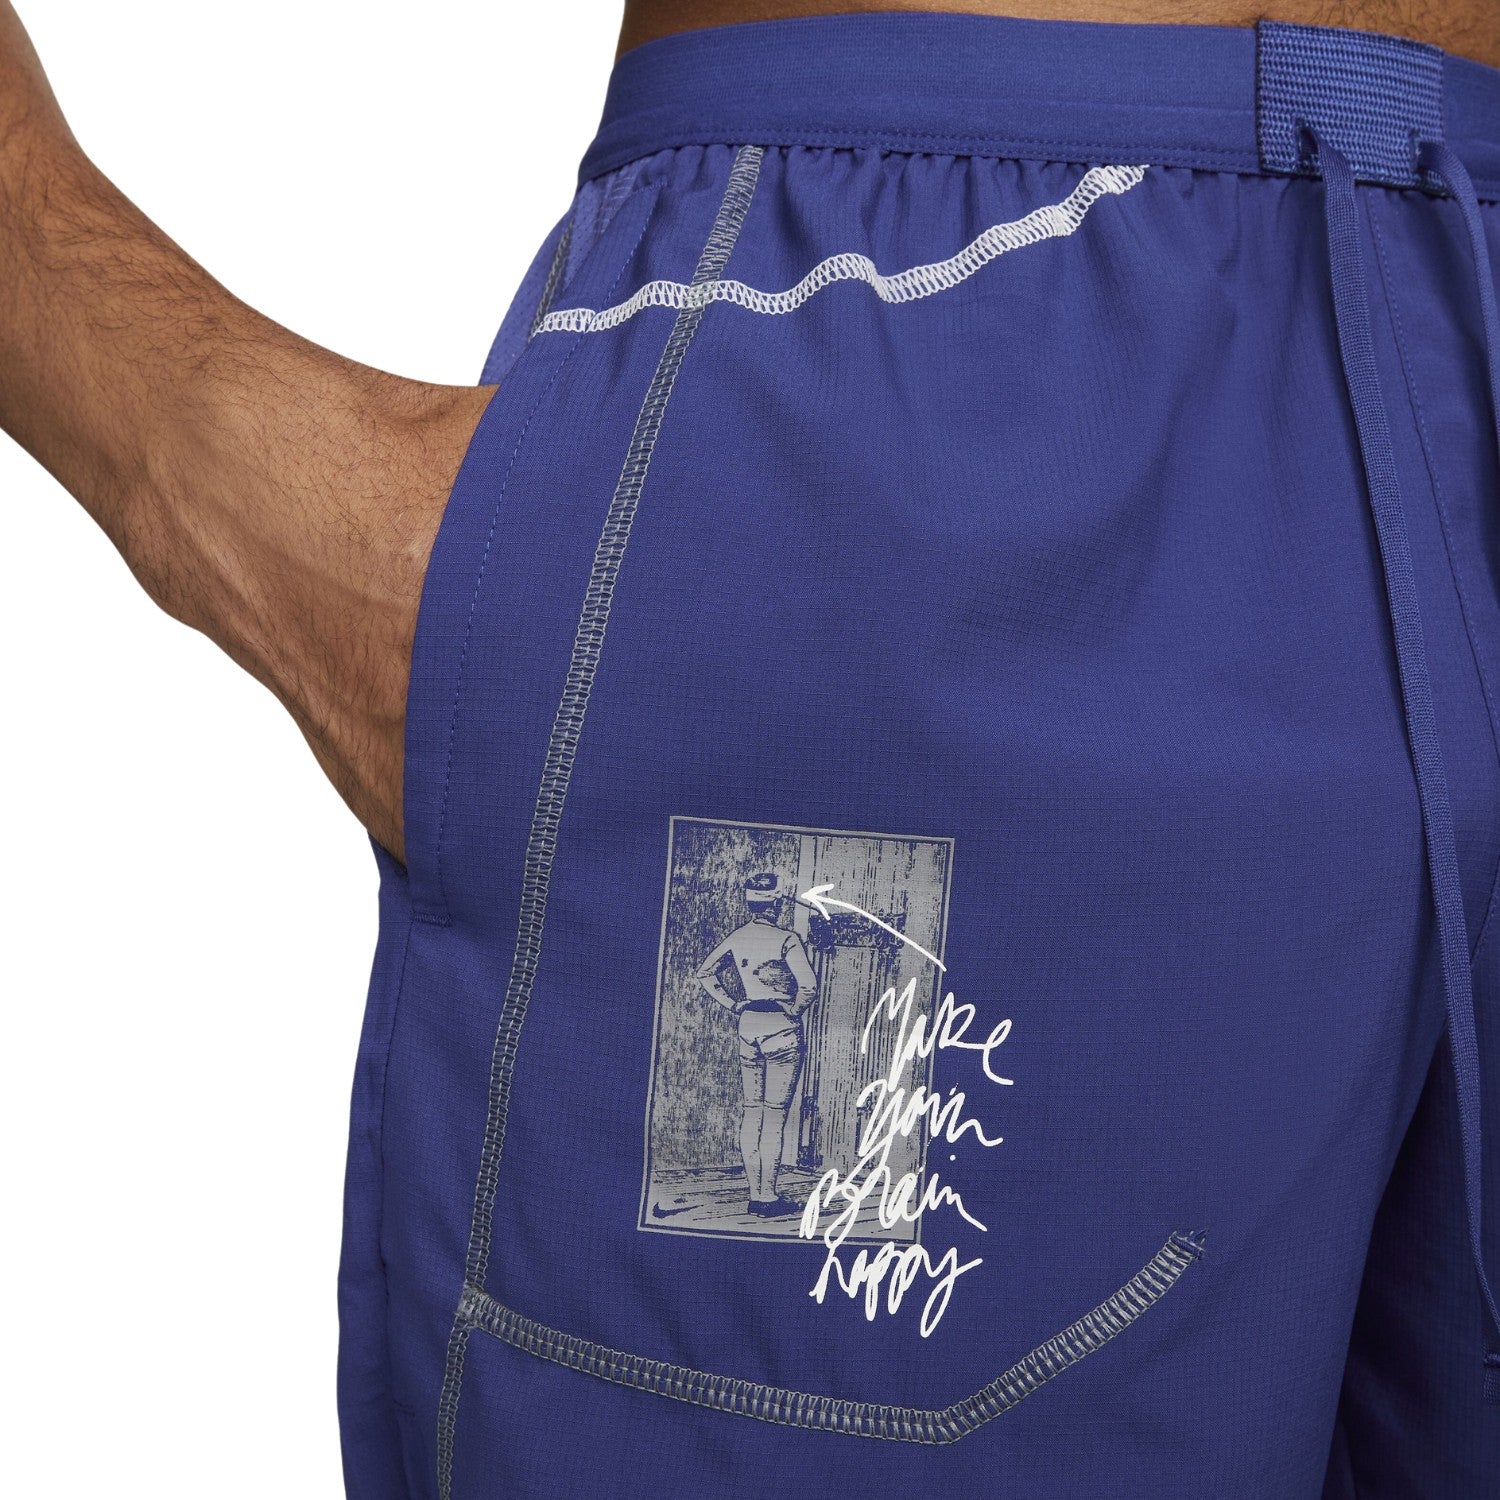 Nike Dri-fit Stride Dye Shorts Mens Style : Dq6559